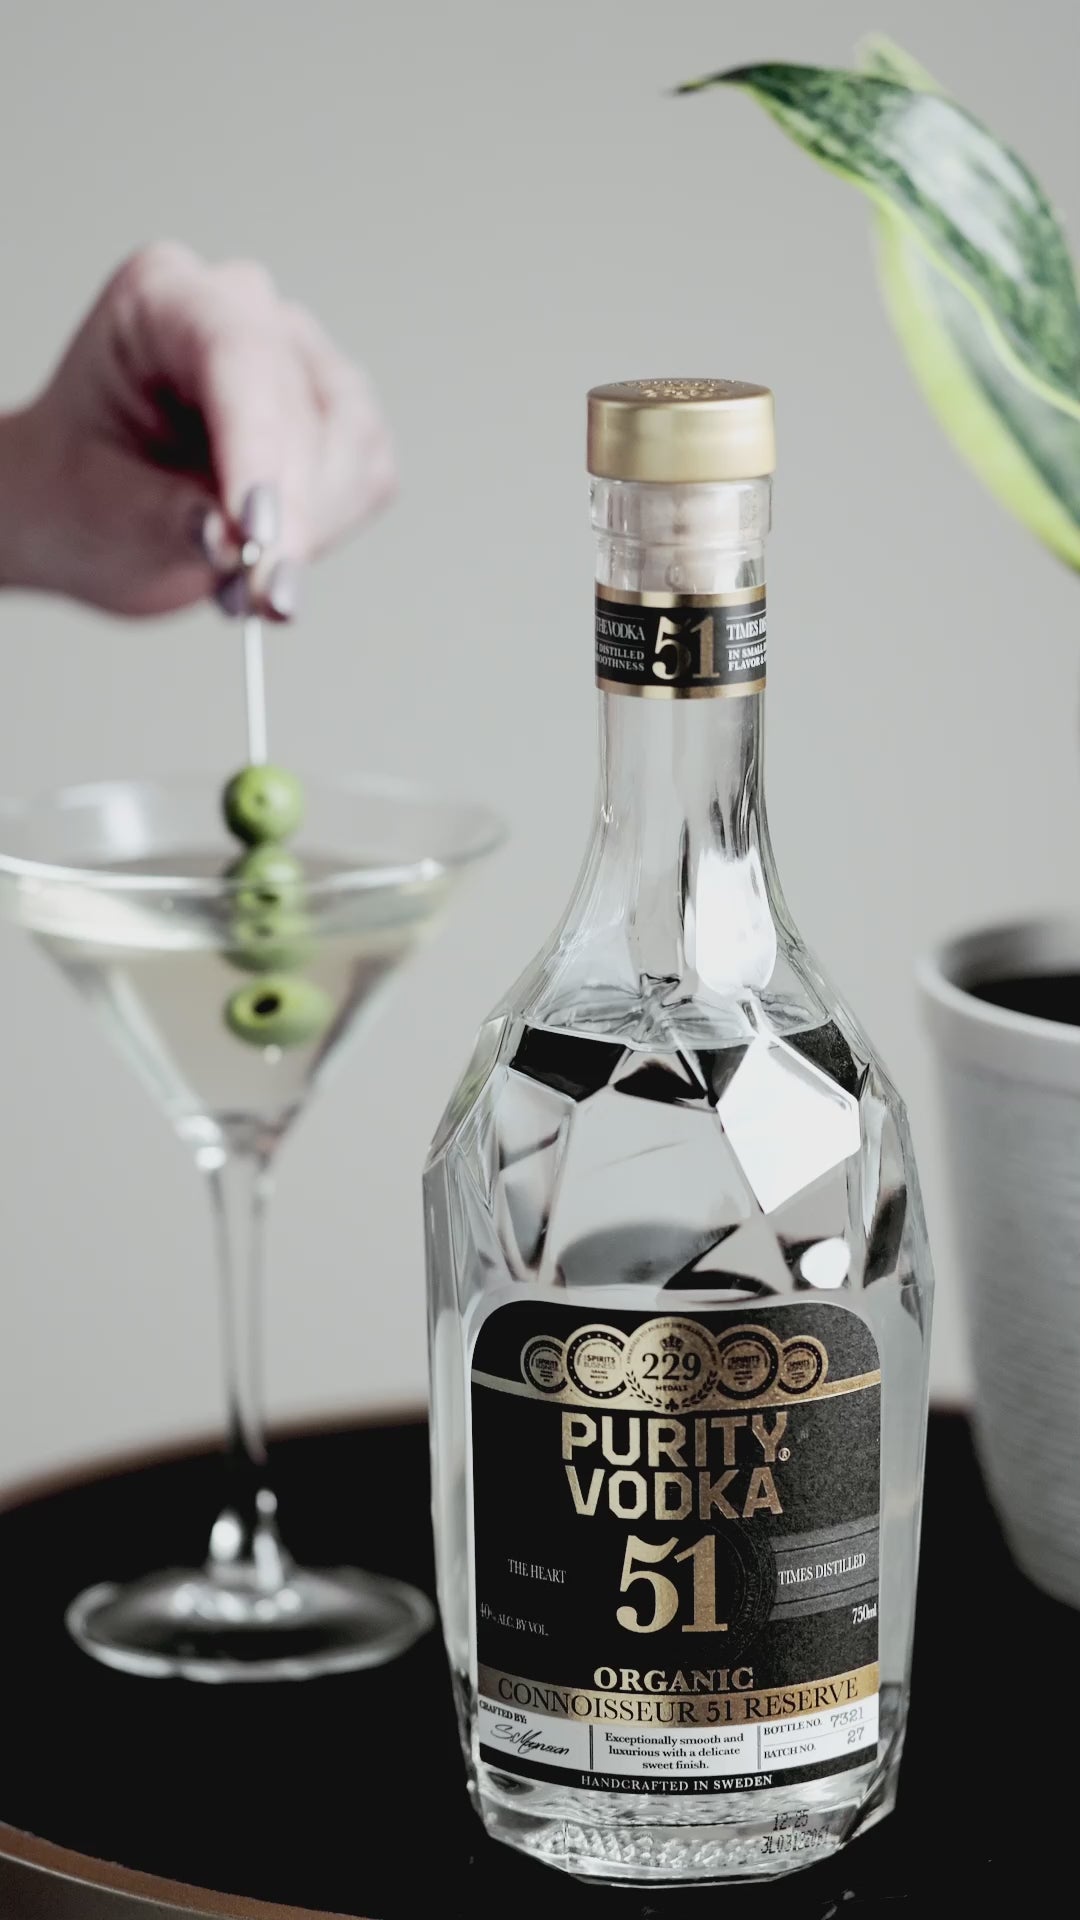 Purity Vodka Connoisseur 51 Réserve 1750 ml